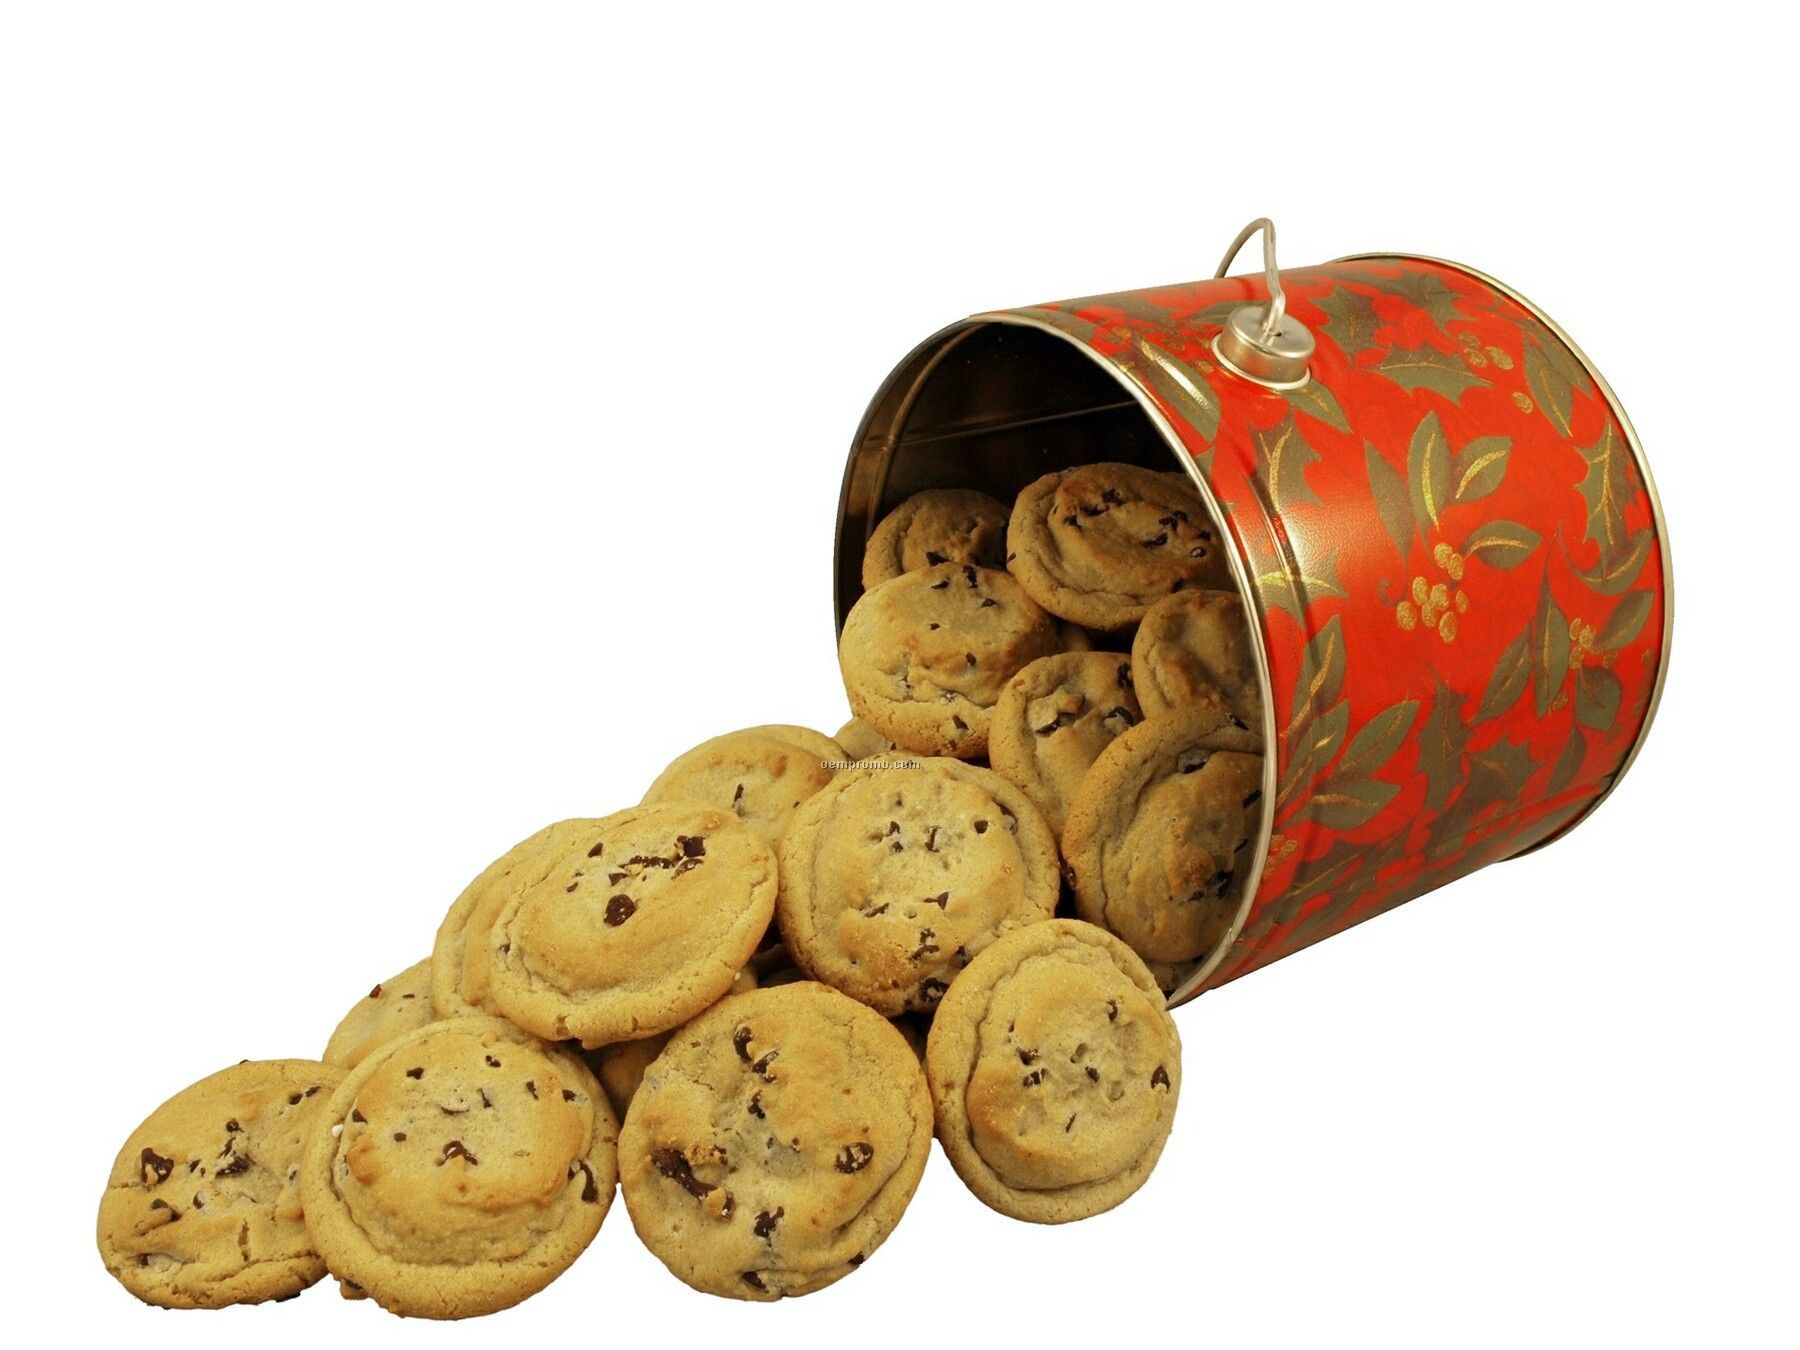 Gourmet Cookie Bucket With Specialty Cookies